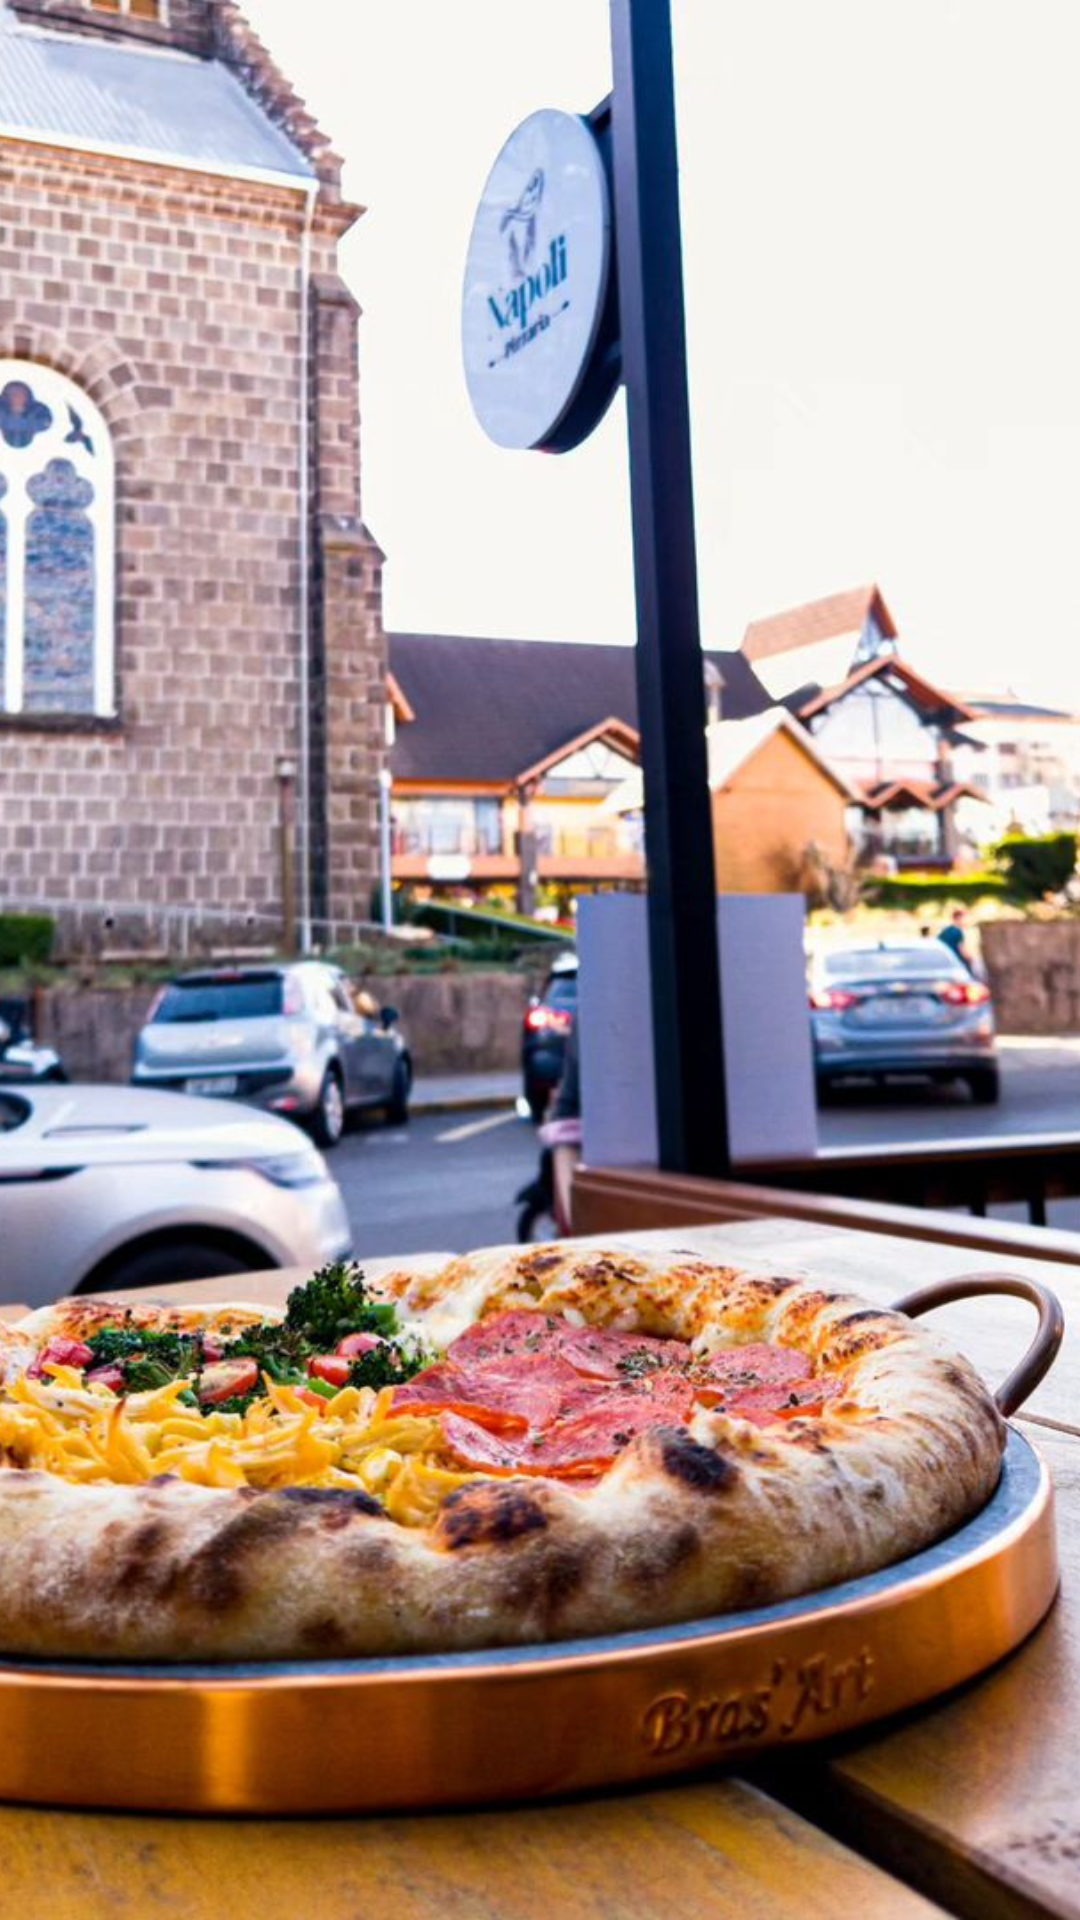 Uma pizza está em uma bandeja sobre uma mesa em frente a uma igreja.